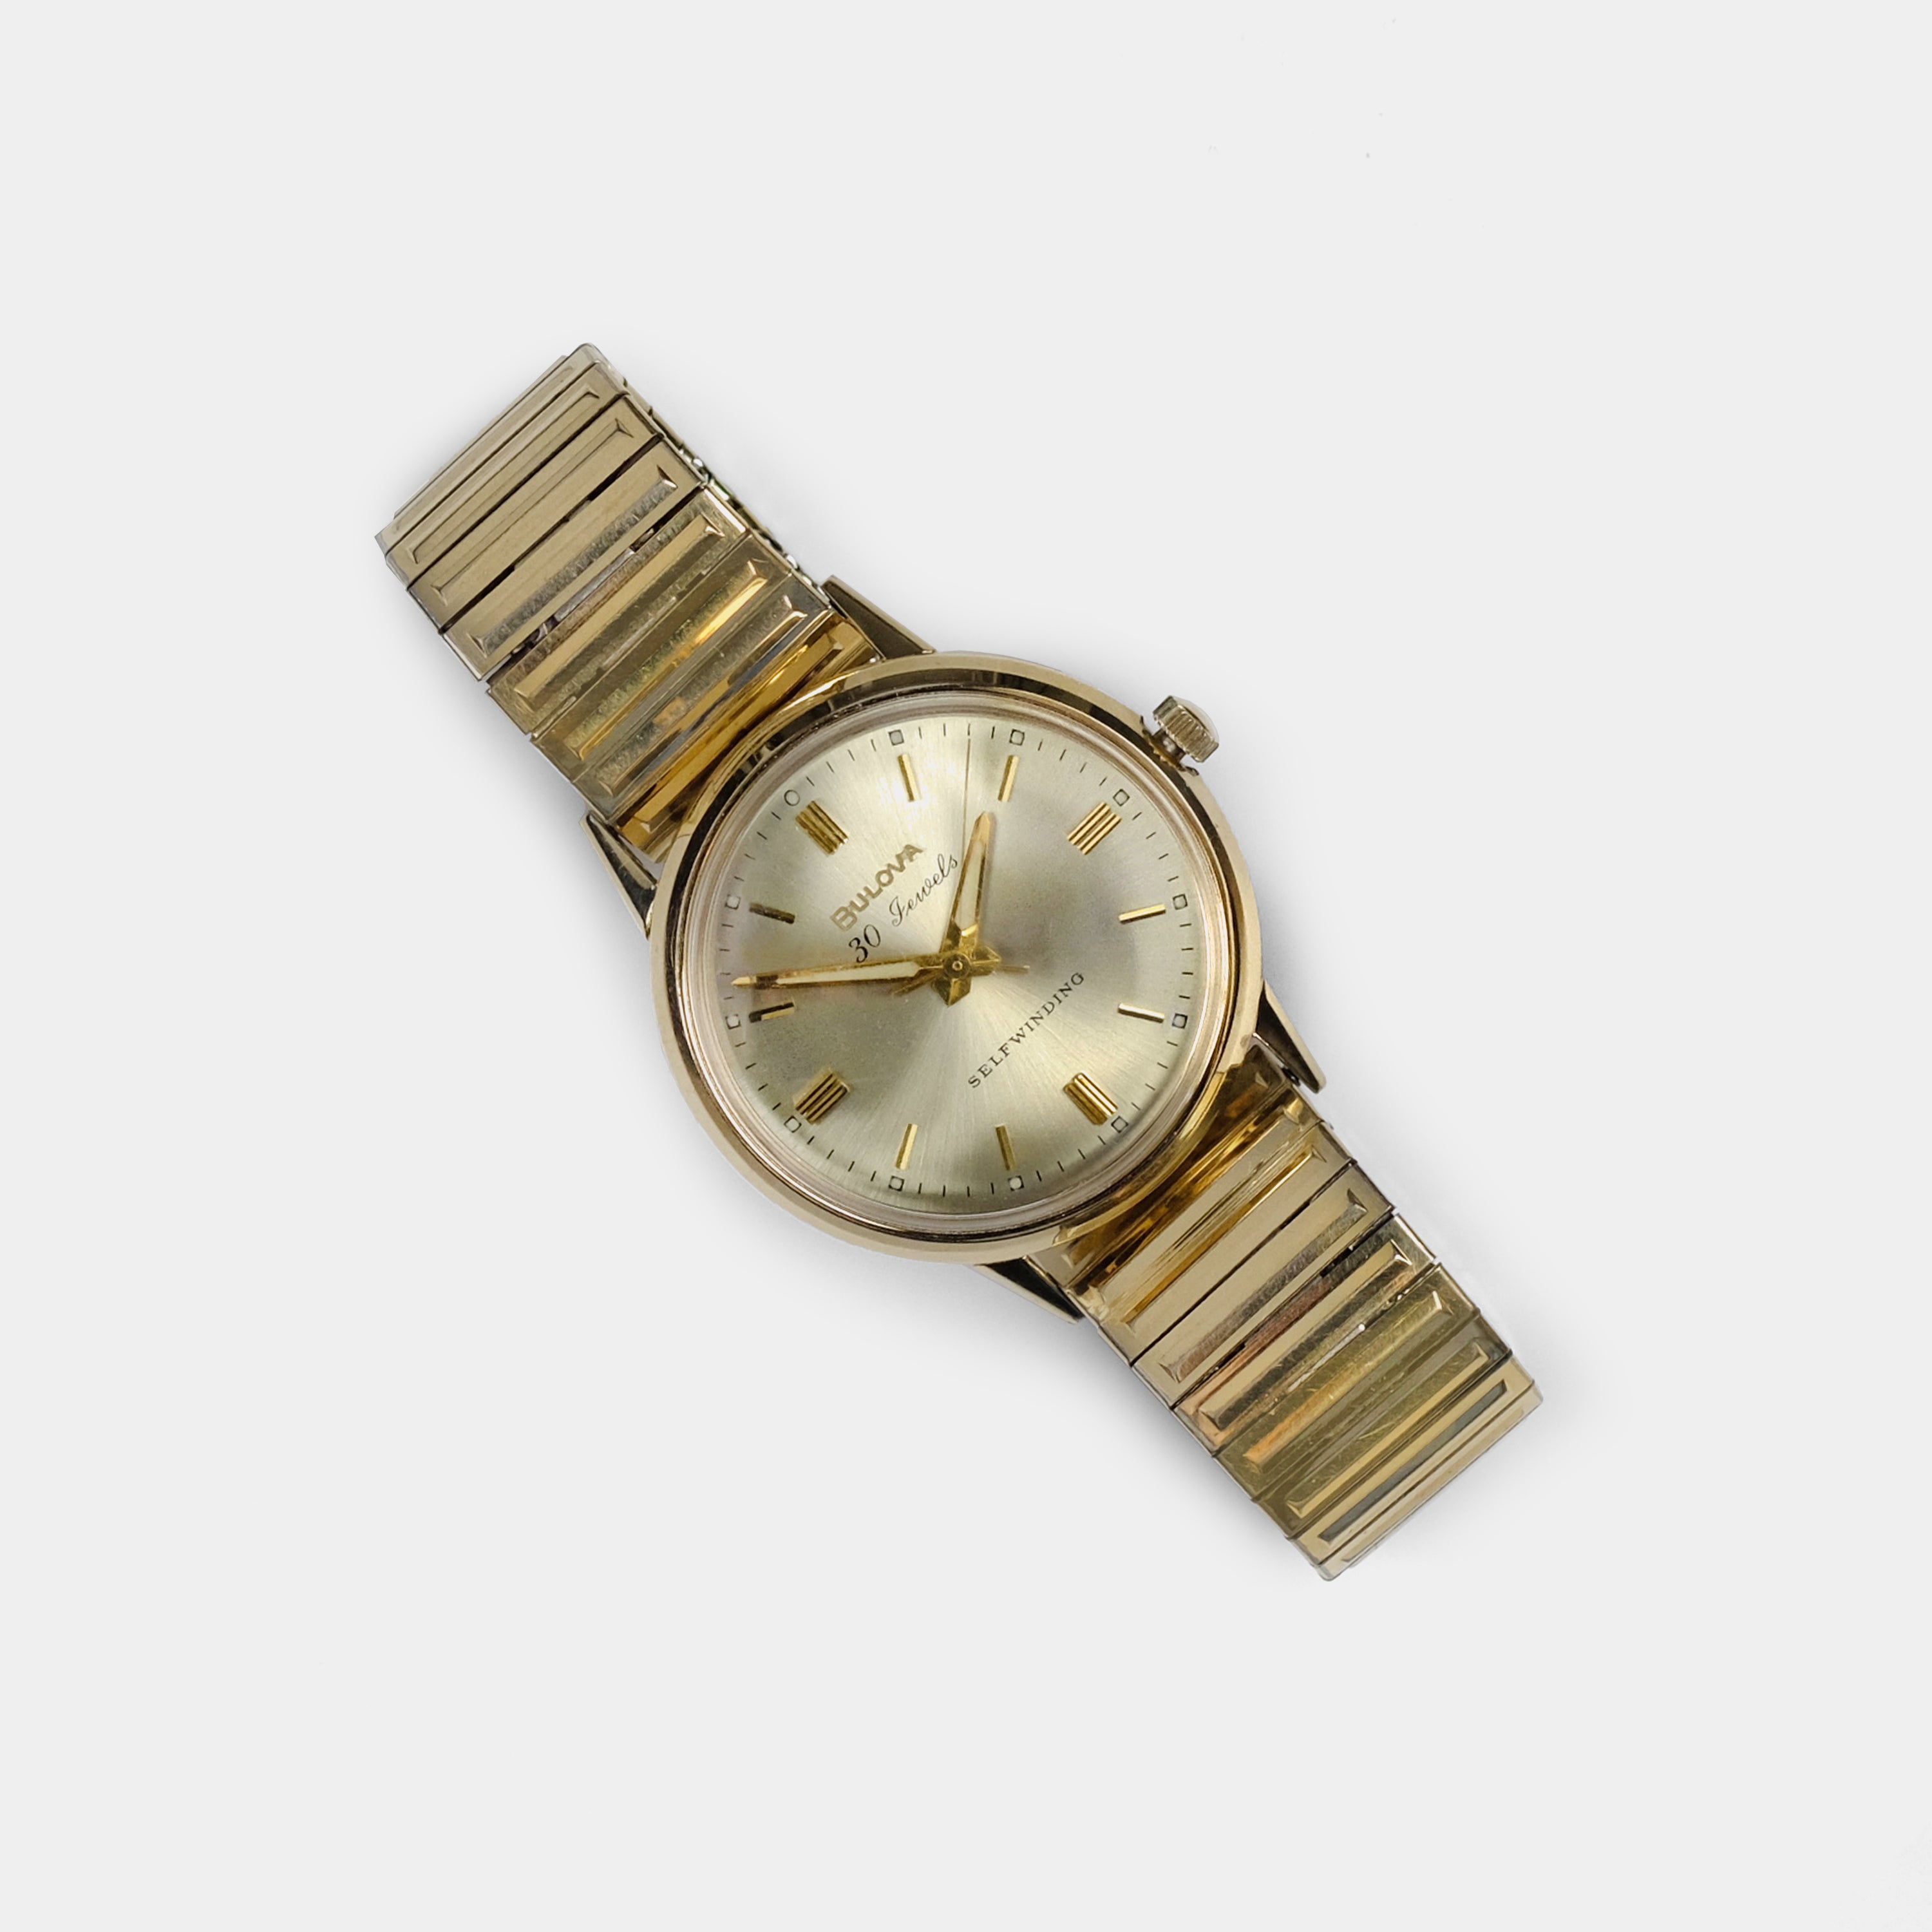 Bulova Self-Winding Automatic Gold-Plated Circa 1967 Wristwatch